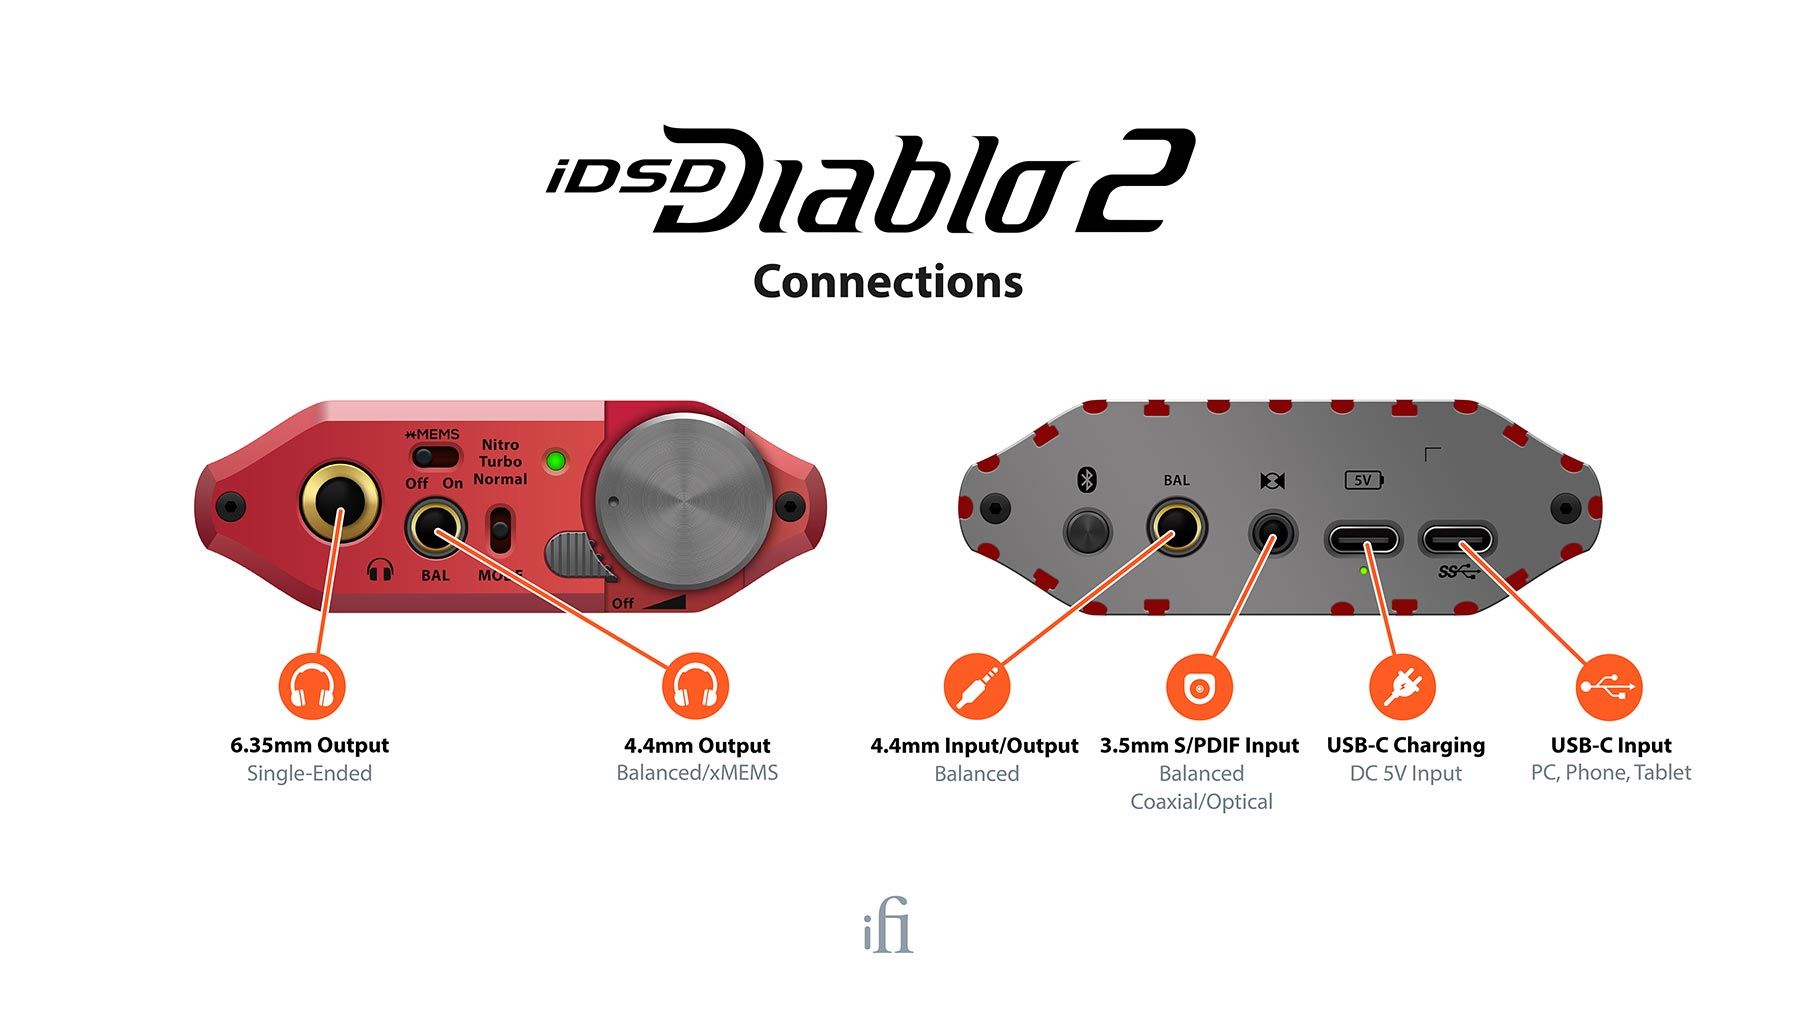 IDSD Diablo 2